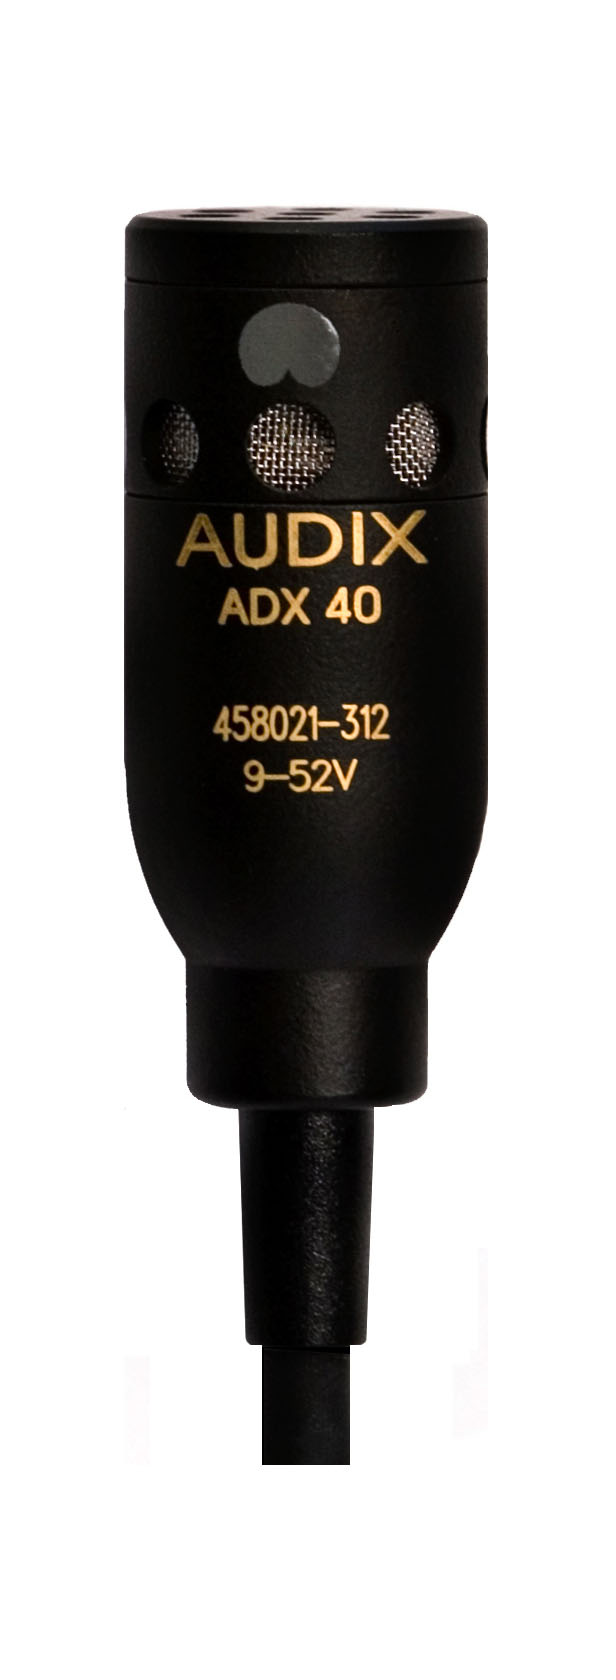 Специальные микрофоны AUDIX ADX40 микрофон mobicent bm 800 конденсаторный с ветрозащитой кабелем и переходником для телефона